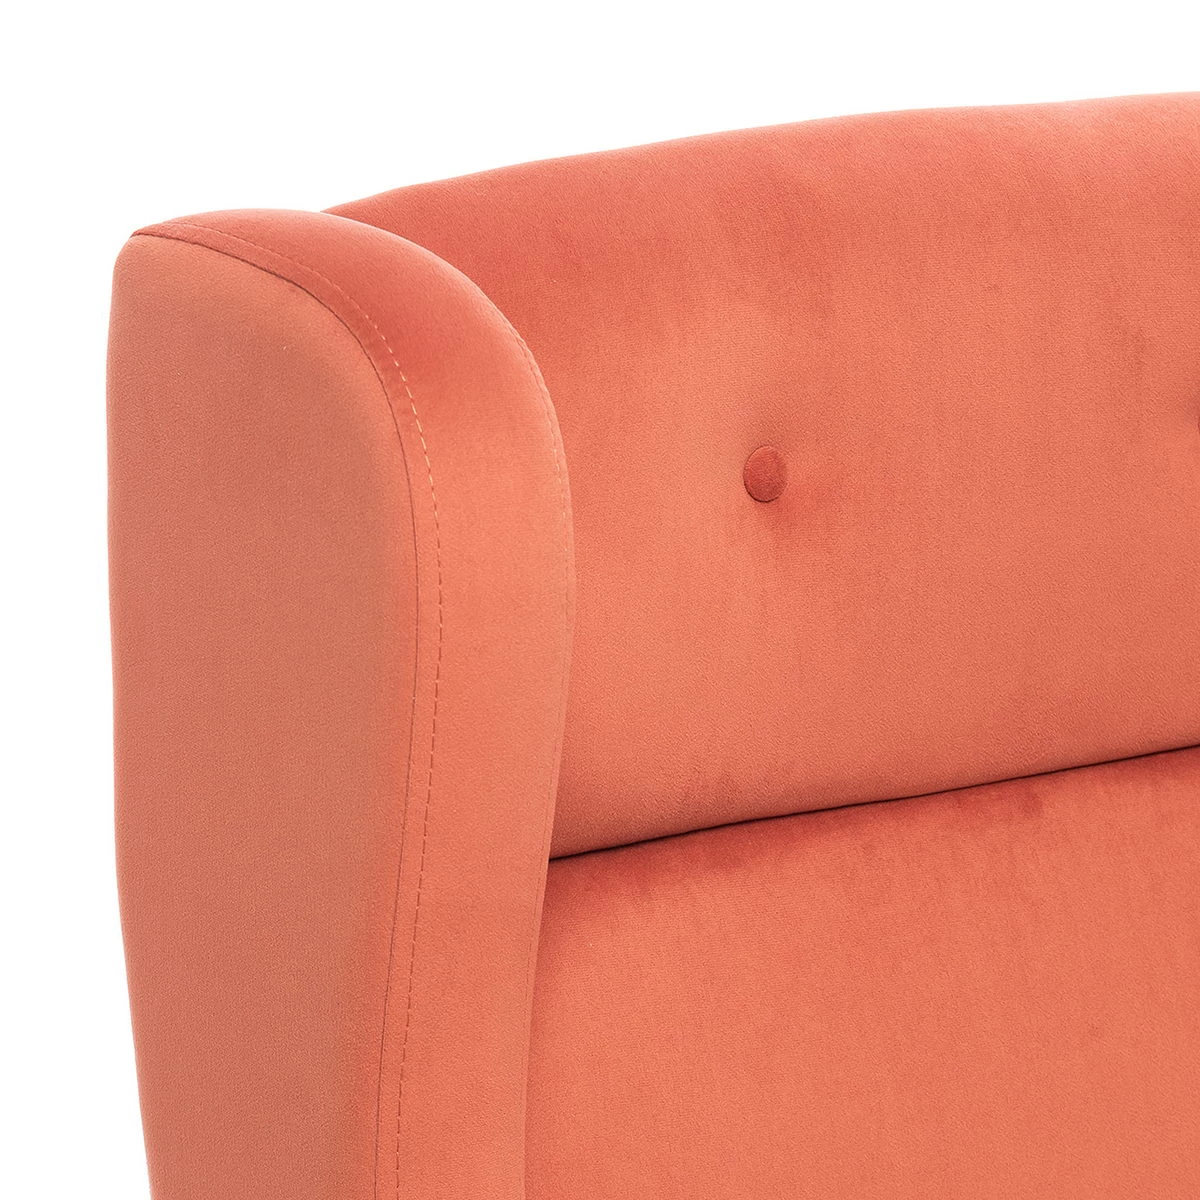 Кресло Leset Галант (Импэкс). Цвет обивки: V39 оранжевый; Цвет ножек: Венге